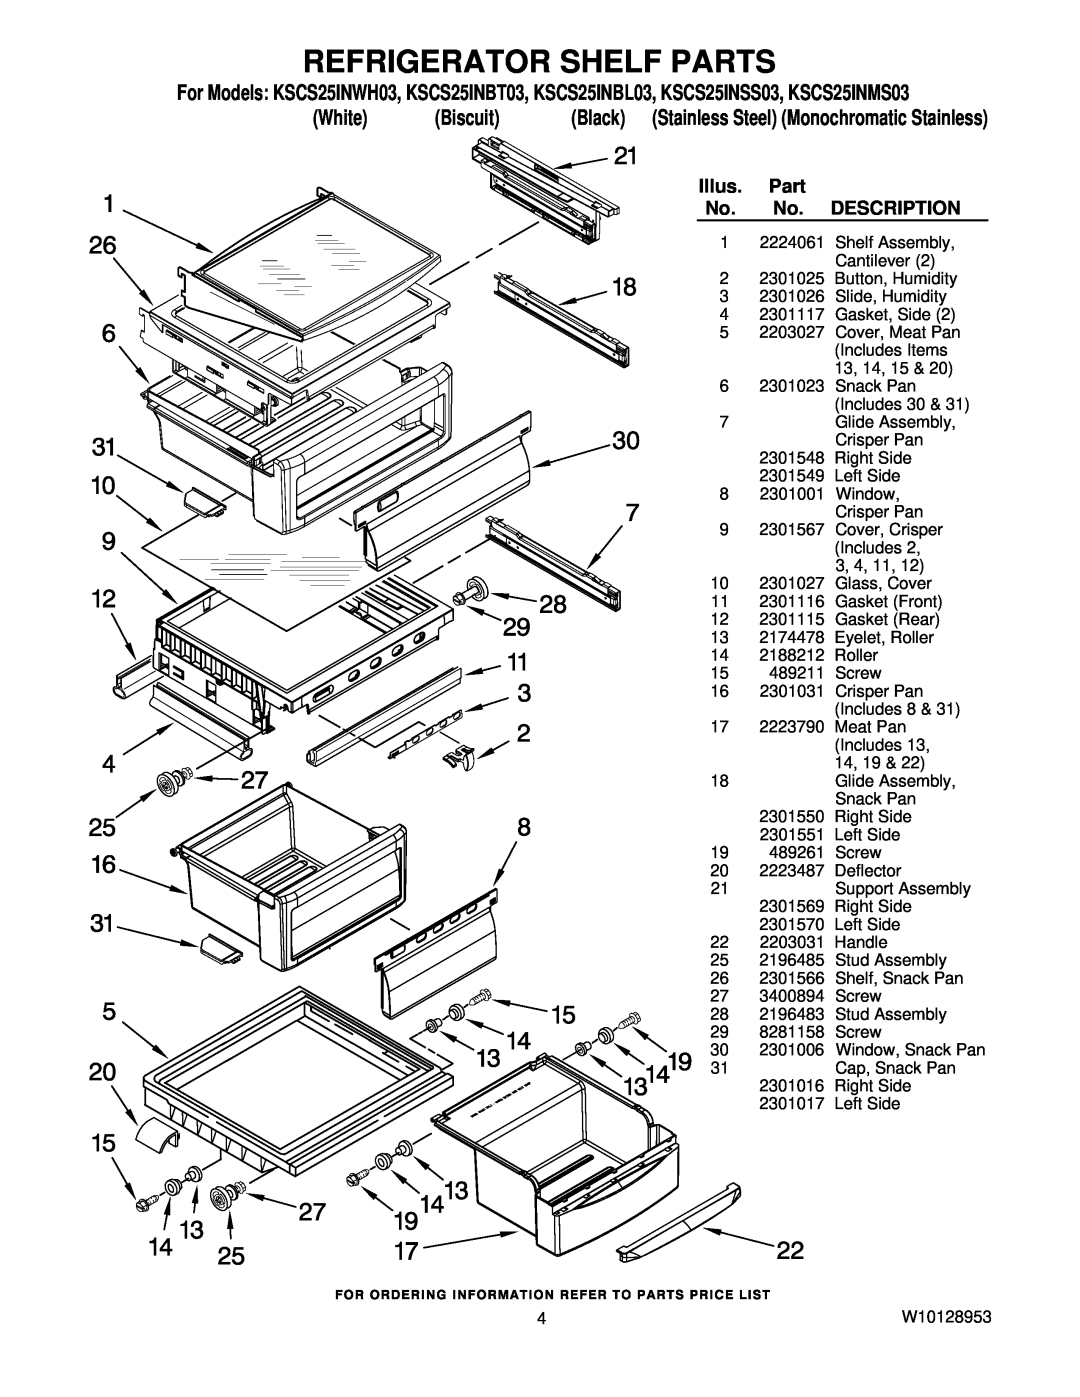 KitchenAid KSCS25INBL03, KSCS25INWH03, KSCS25INSS03 manual Refrigerator Shelf Parts, White, Biscuit, Illus, Description 